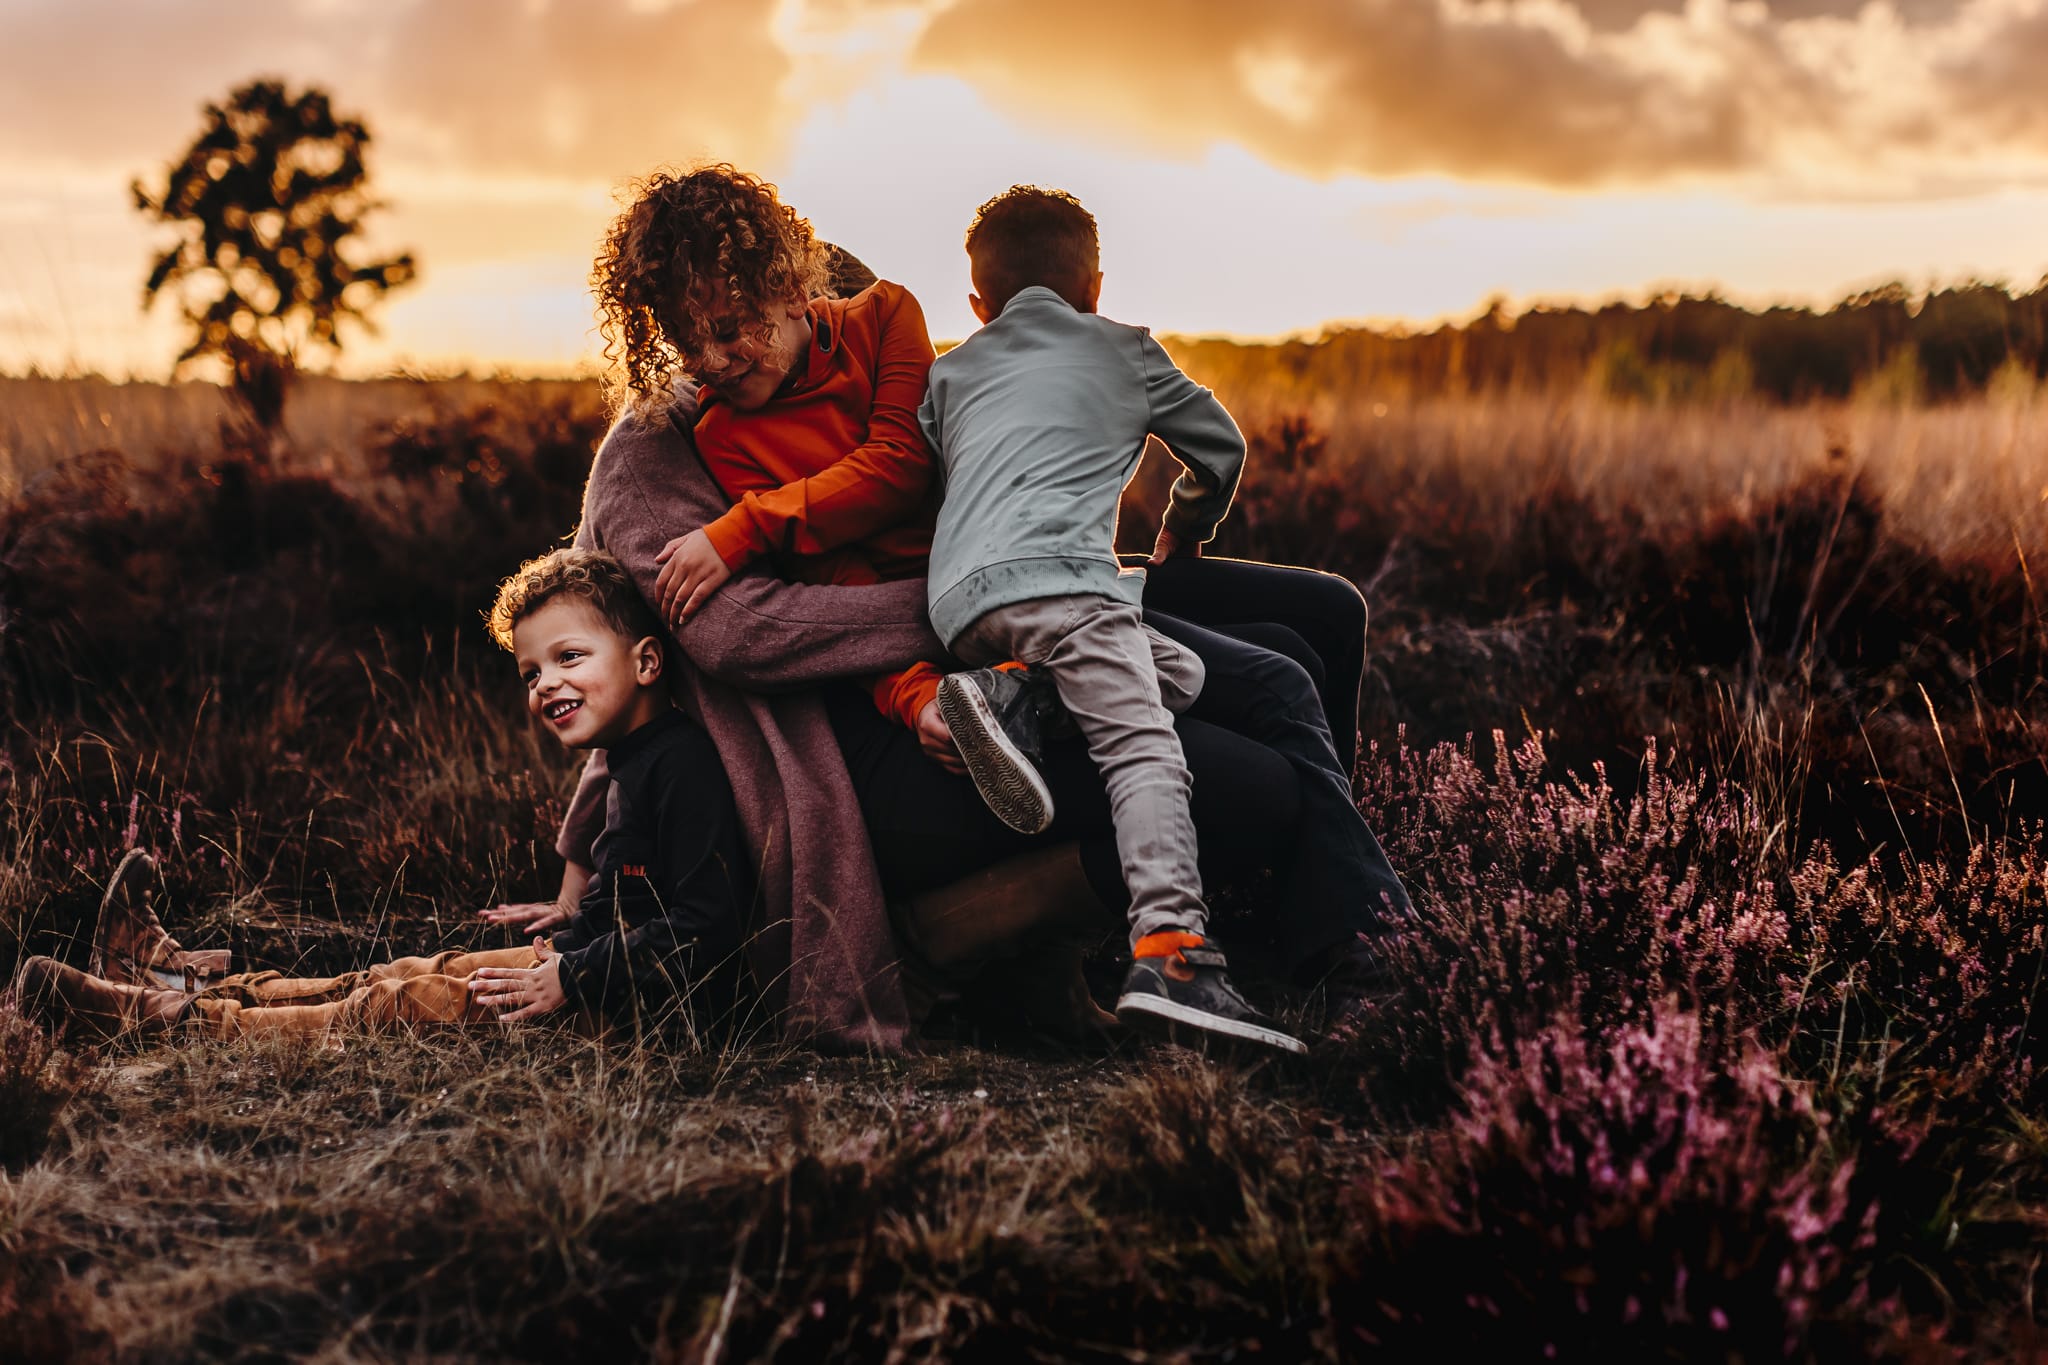 familiefotograaf familie fotoshoot zwangerschapshoot fotograaf Amersfoort, Apeldoorn, Zwolle, Nijkerk, Zeewolde, Ede, Naarden, Lelystad, Almere, Harderwijk, Ermelo, Nunspeet, Putten